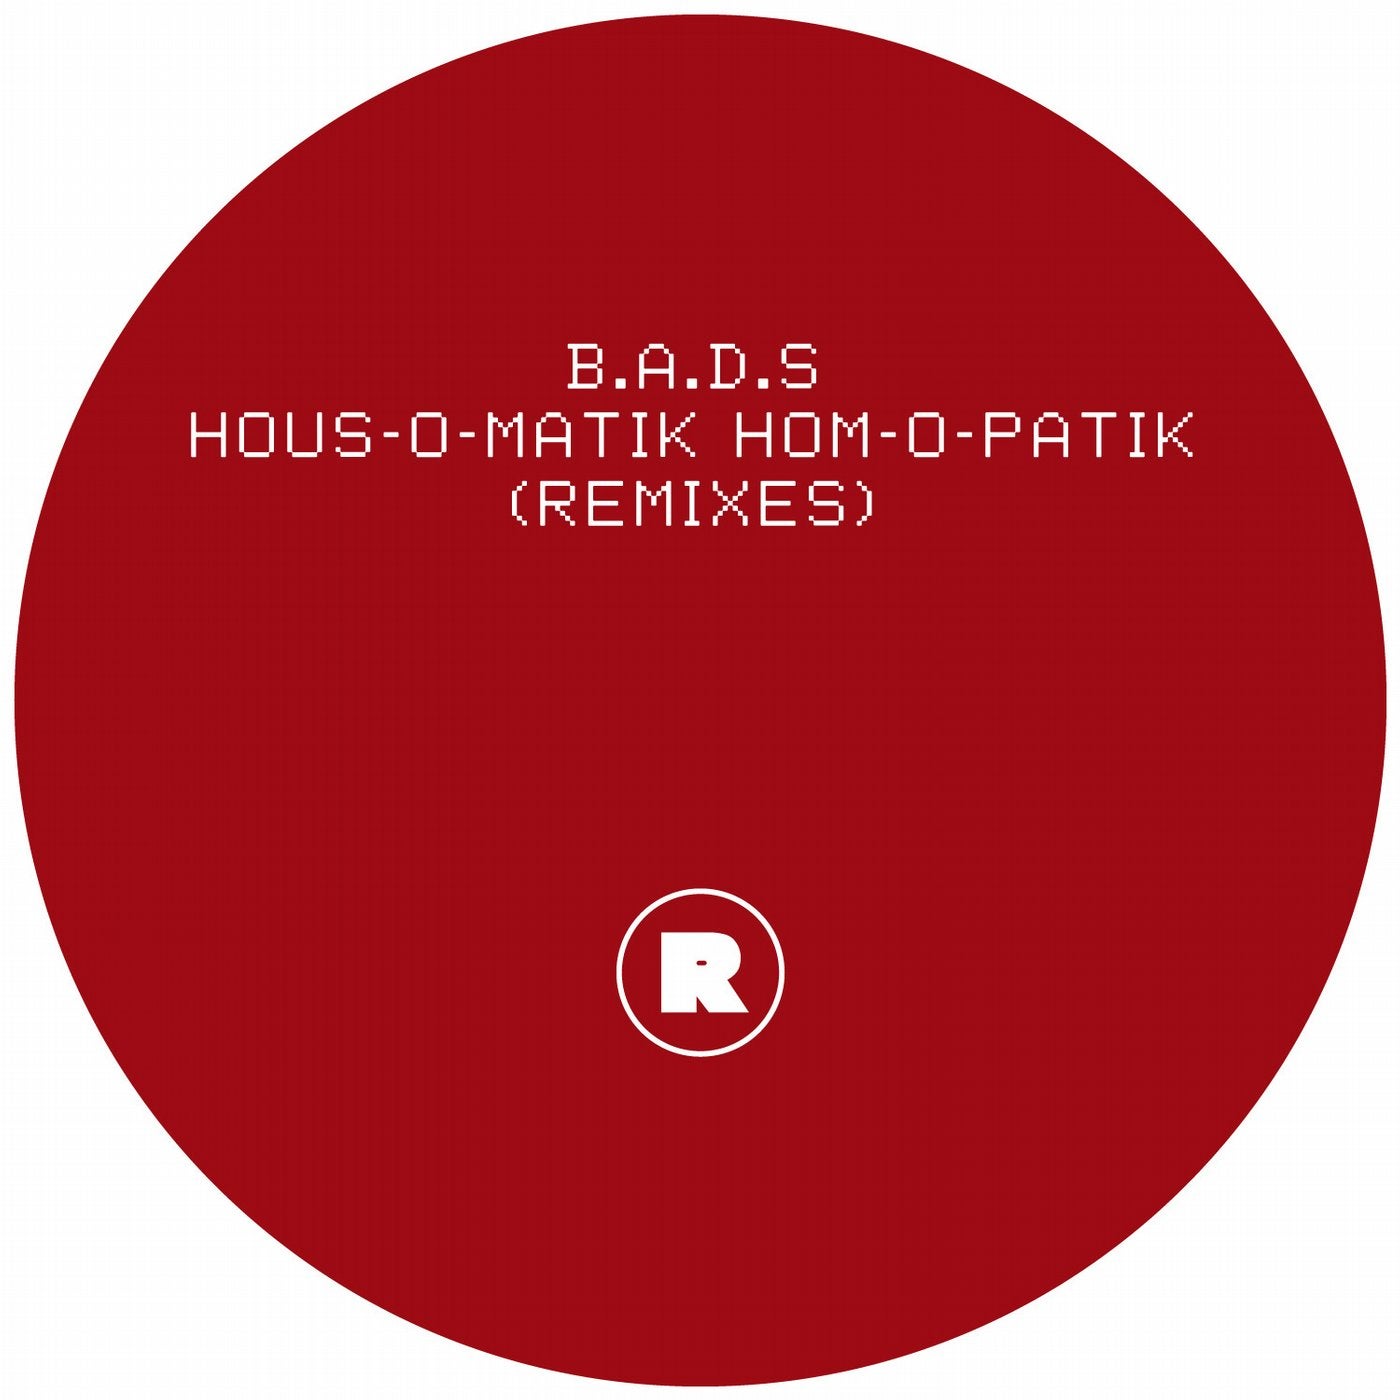 HOUS-O-MATIK HOM-O-PATIK (Remixes)